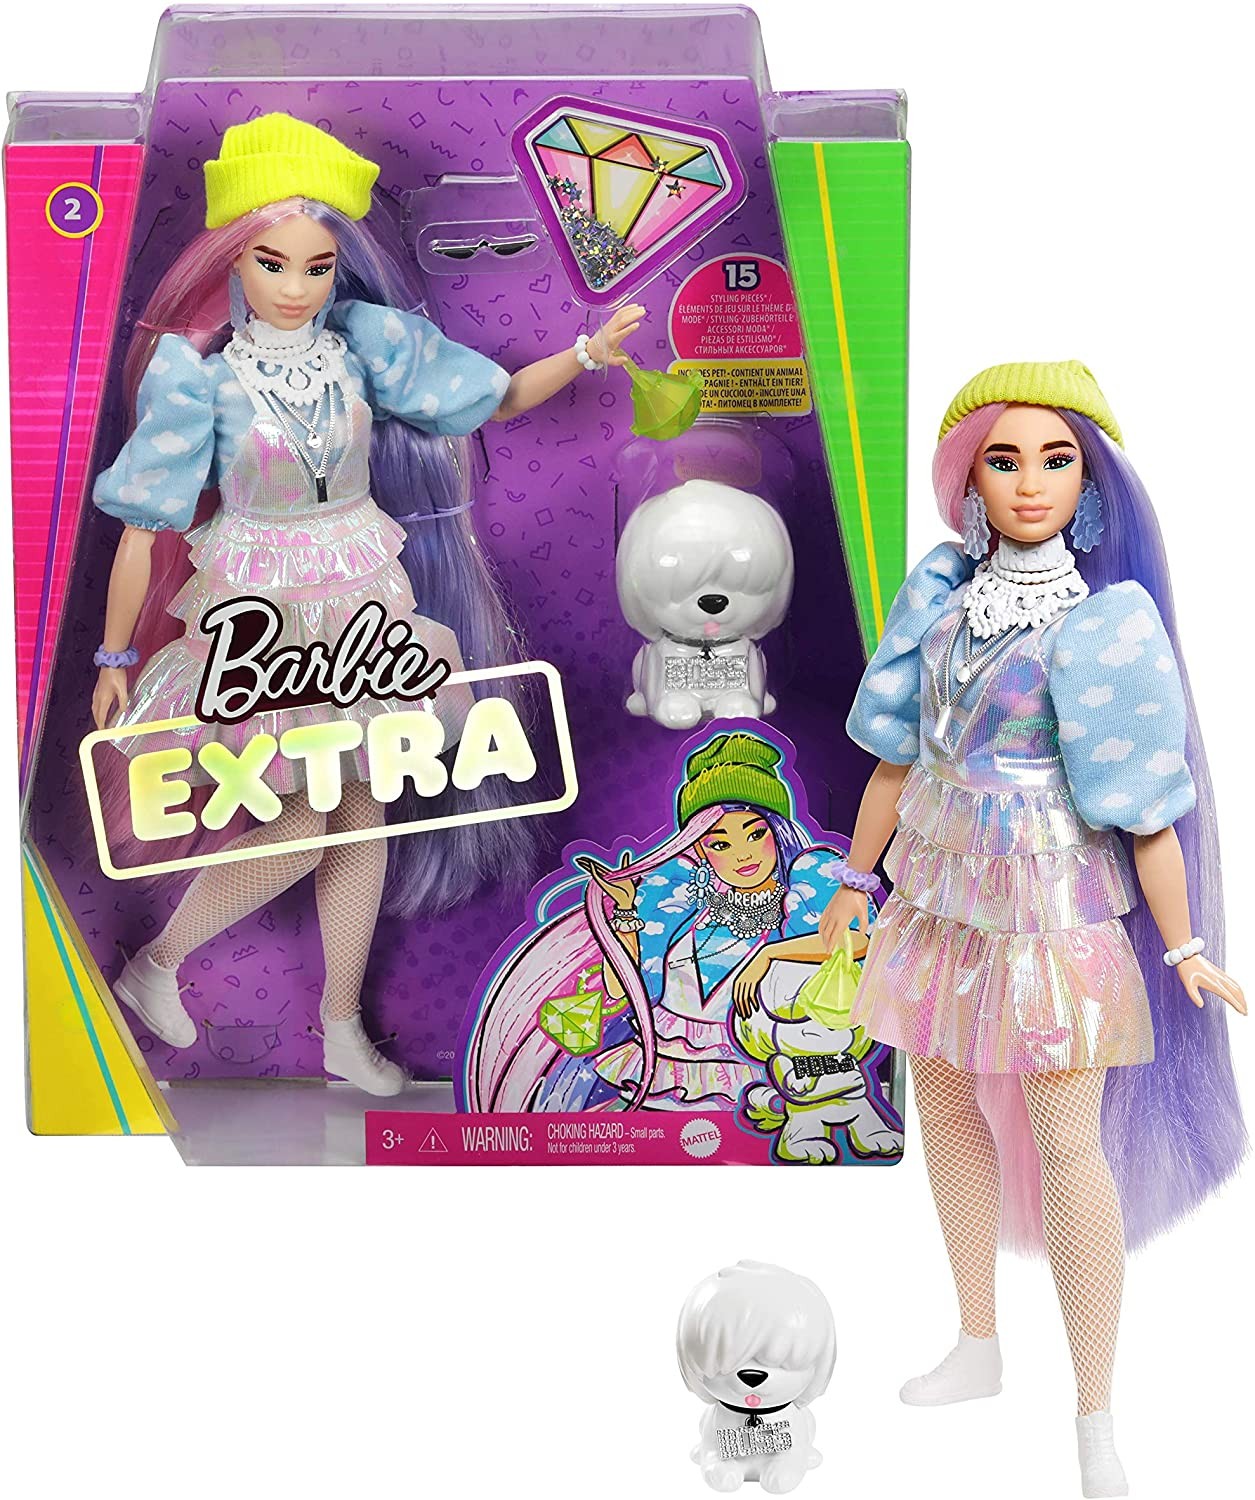 Barbie Extra Capelli Rosa e Viola